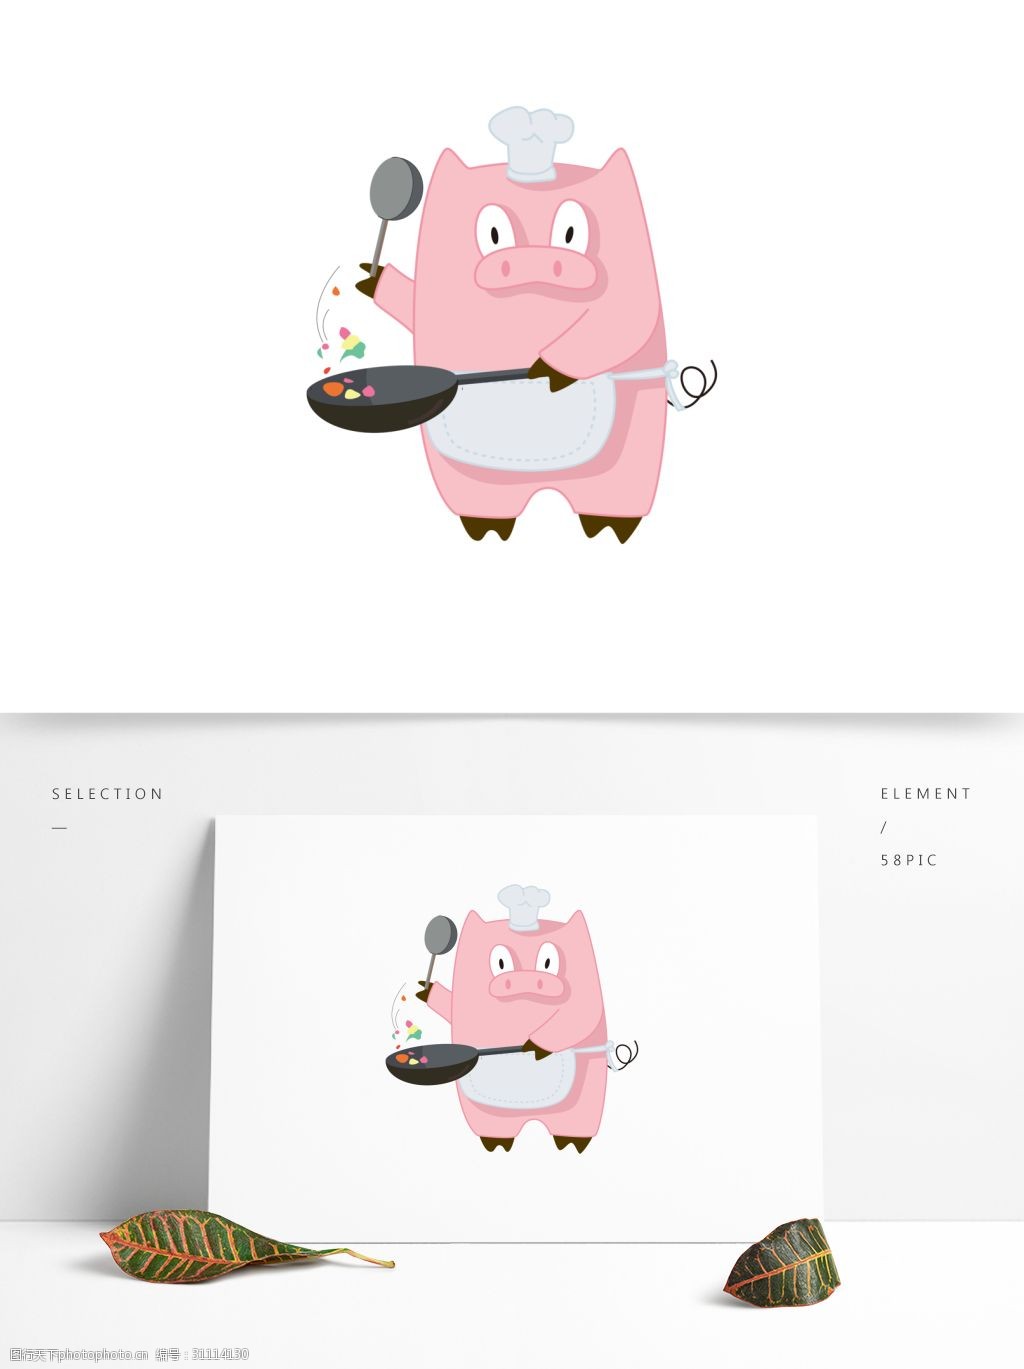 简约猪年卡通猪形象表情包可爱卡通做饭